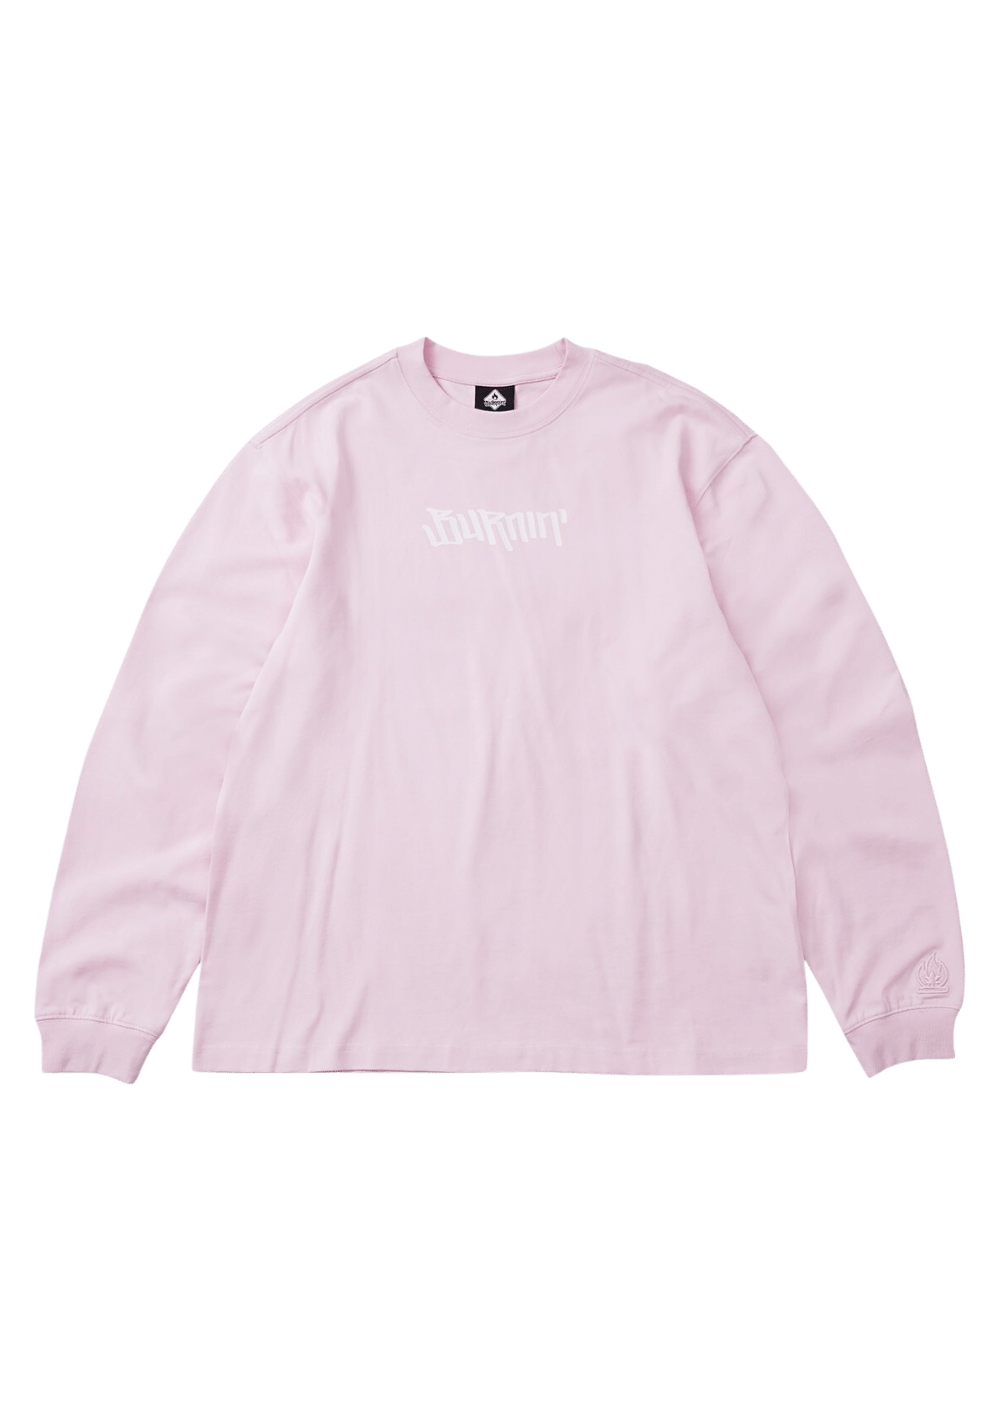 Horizontal Logo Sweatshirt-Pink - PSYLOS 1, Horizontal Logo Sweatshirt-Pink, Sweatshirts, Burnin, PSYLOS 1